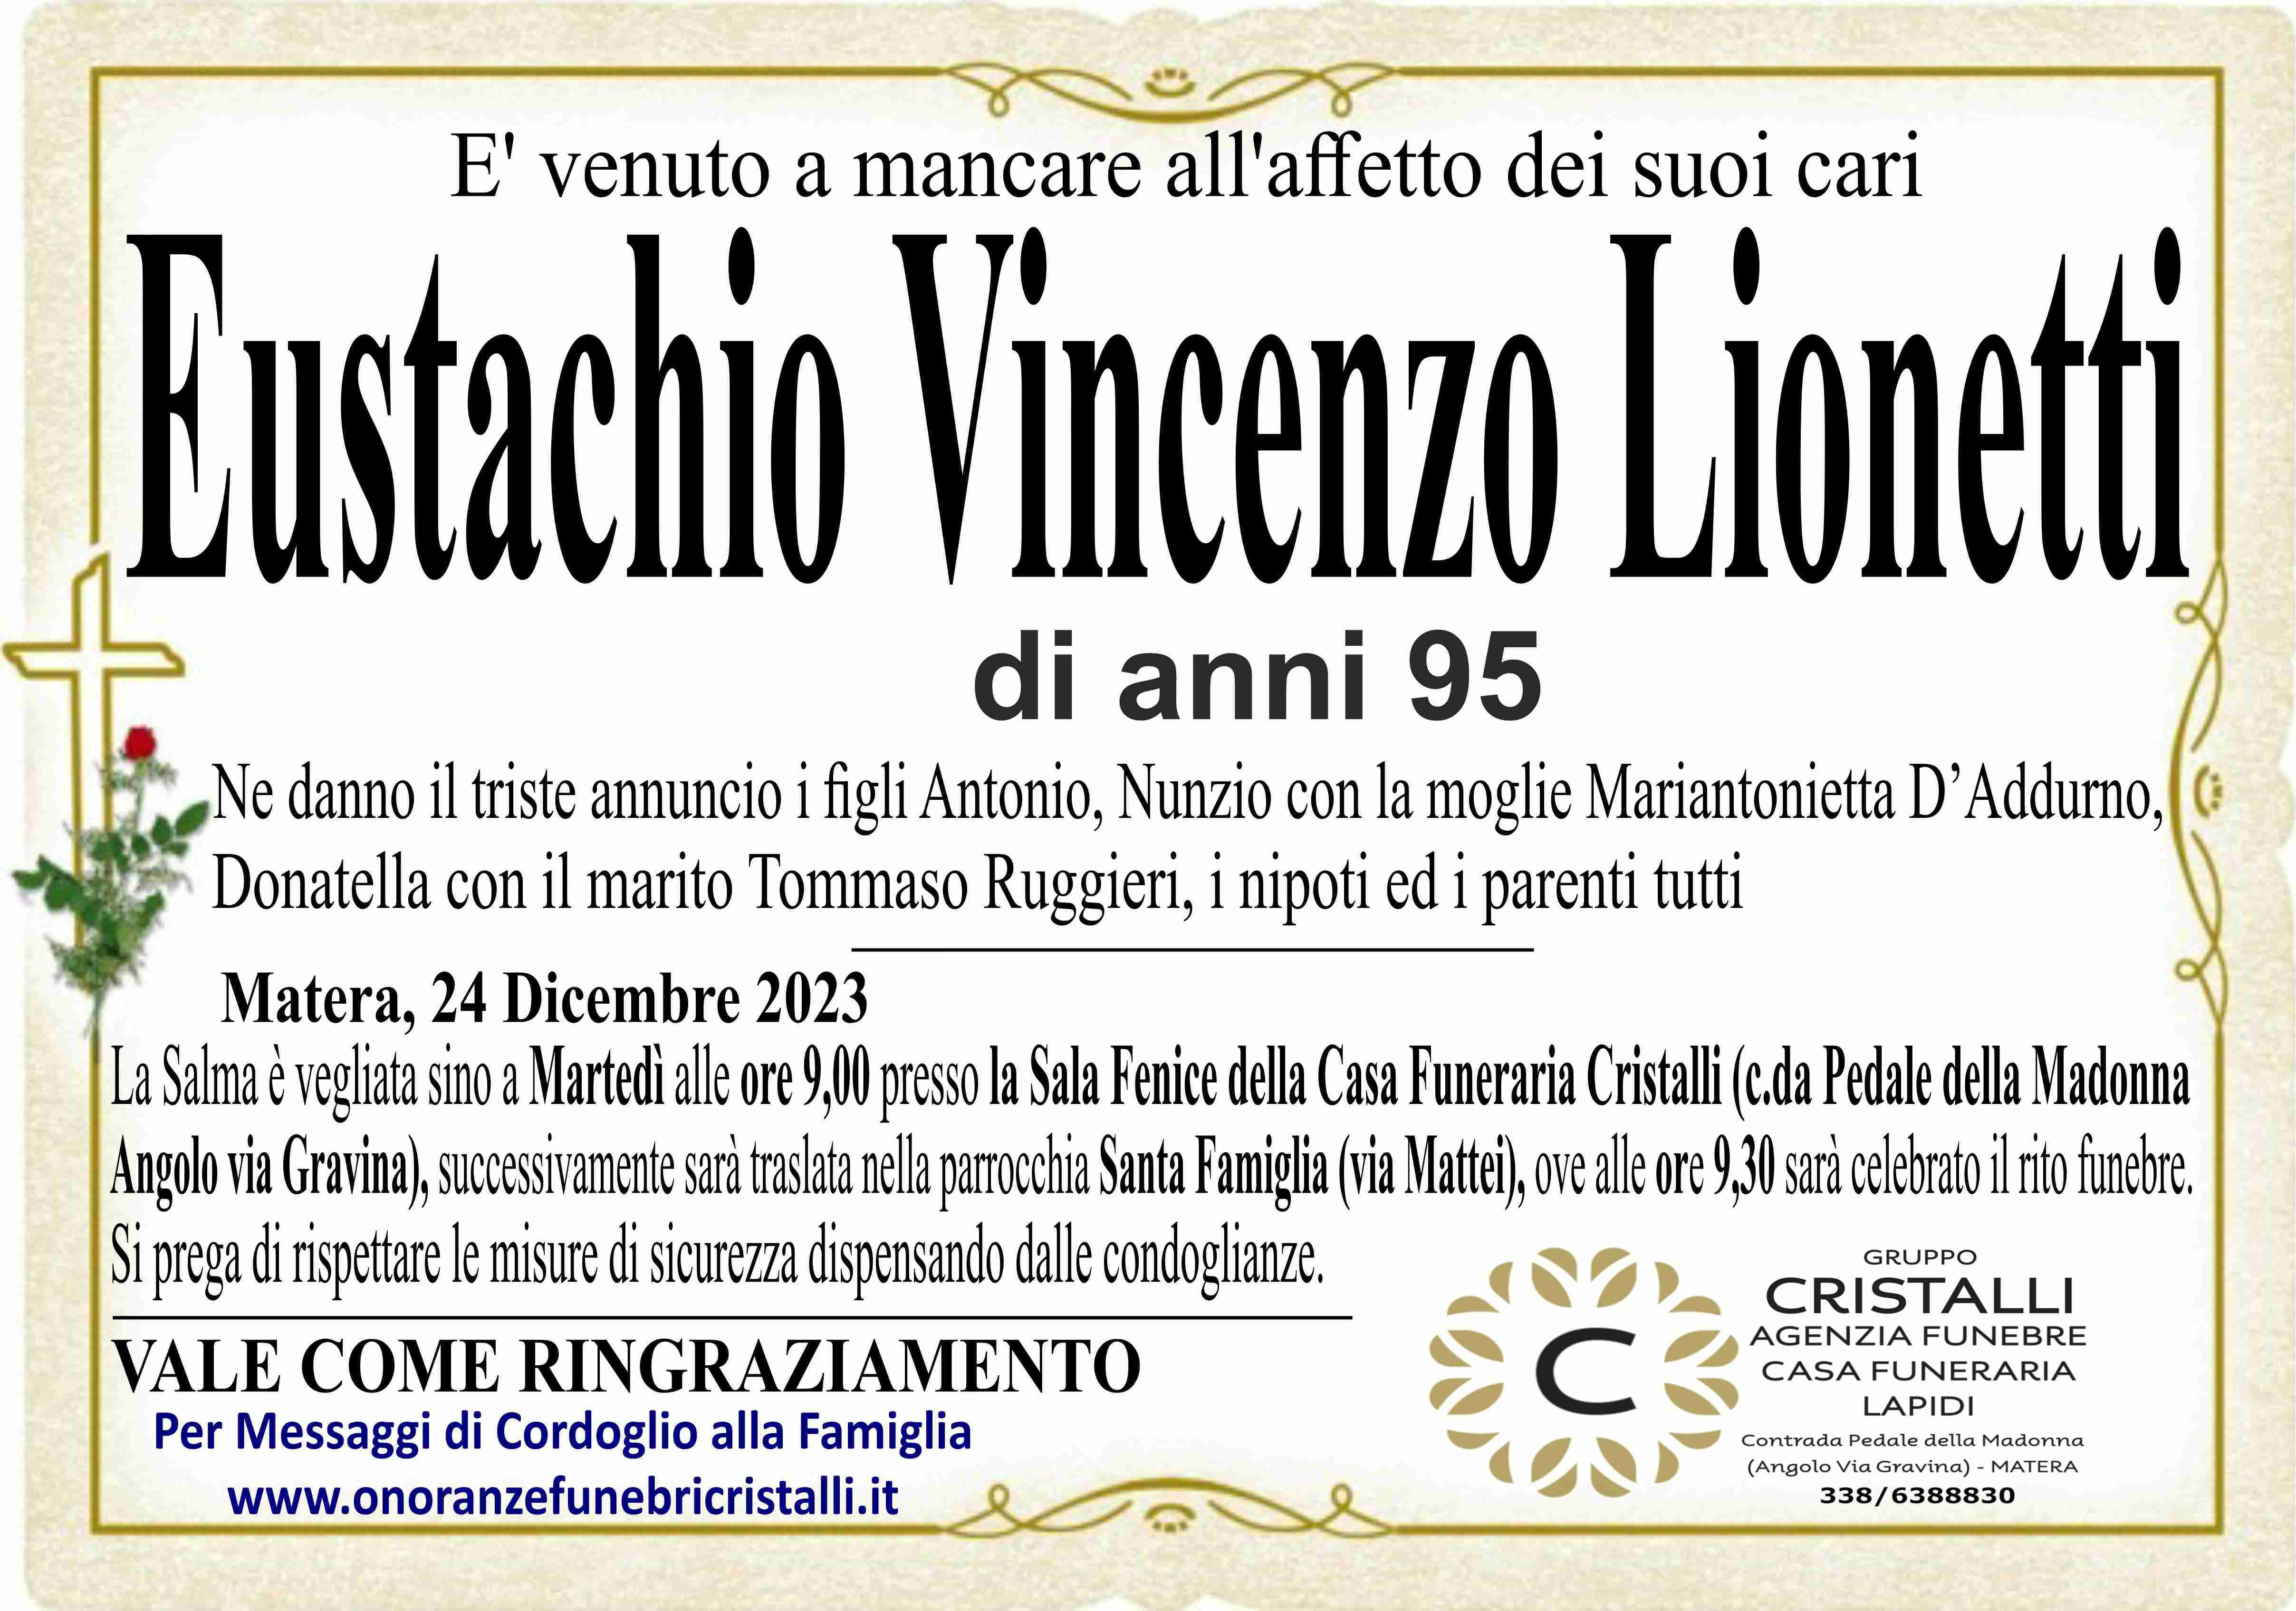 Eustachio Vincenzo Lionetti